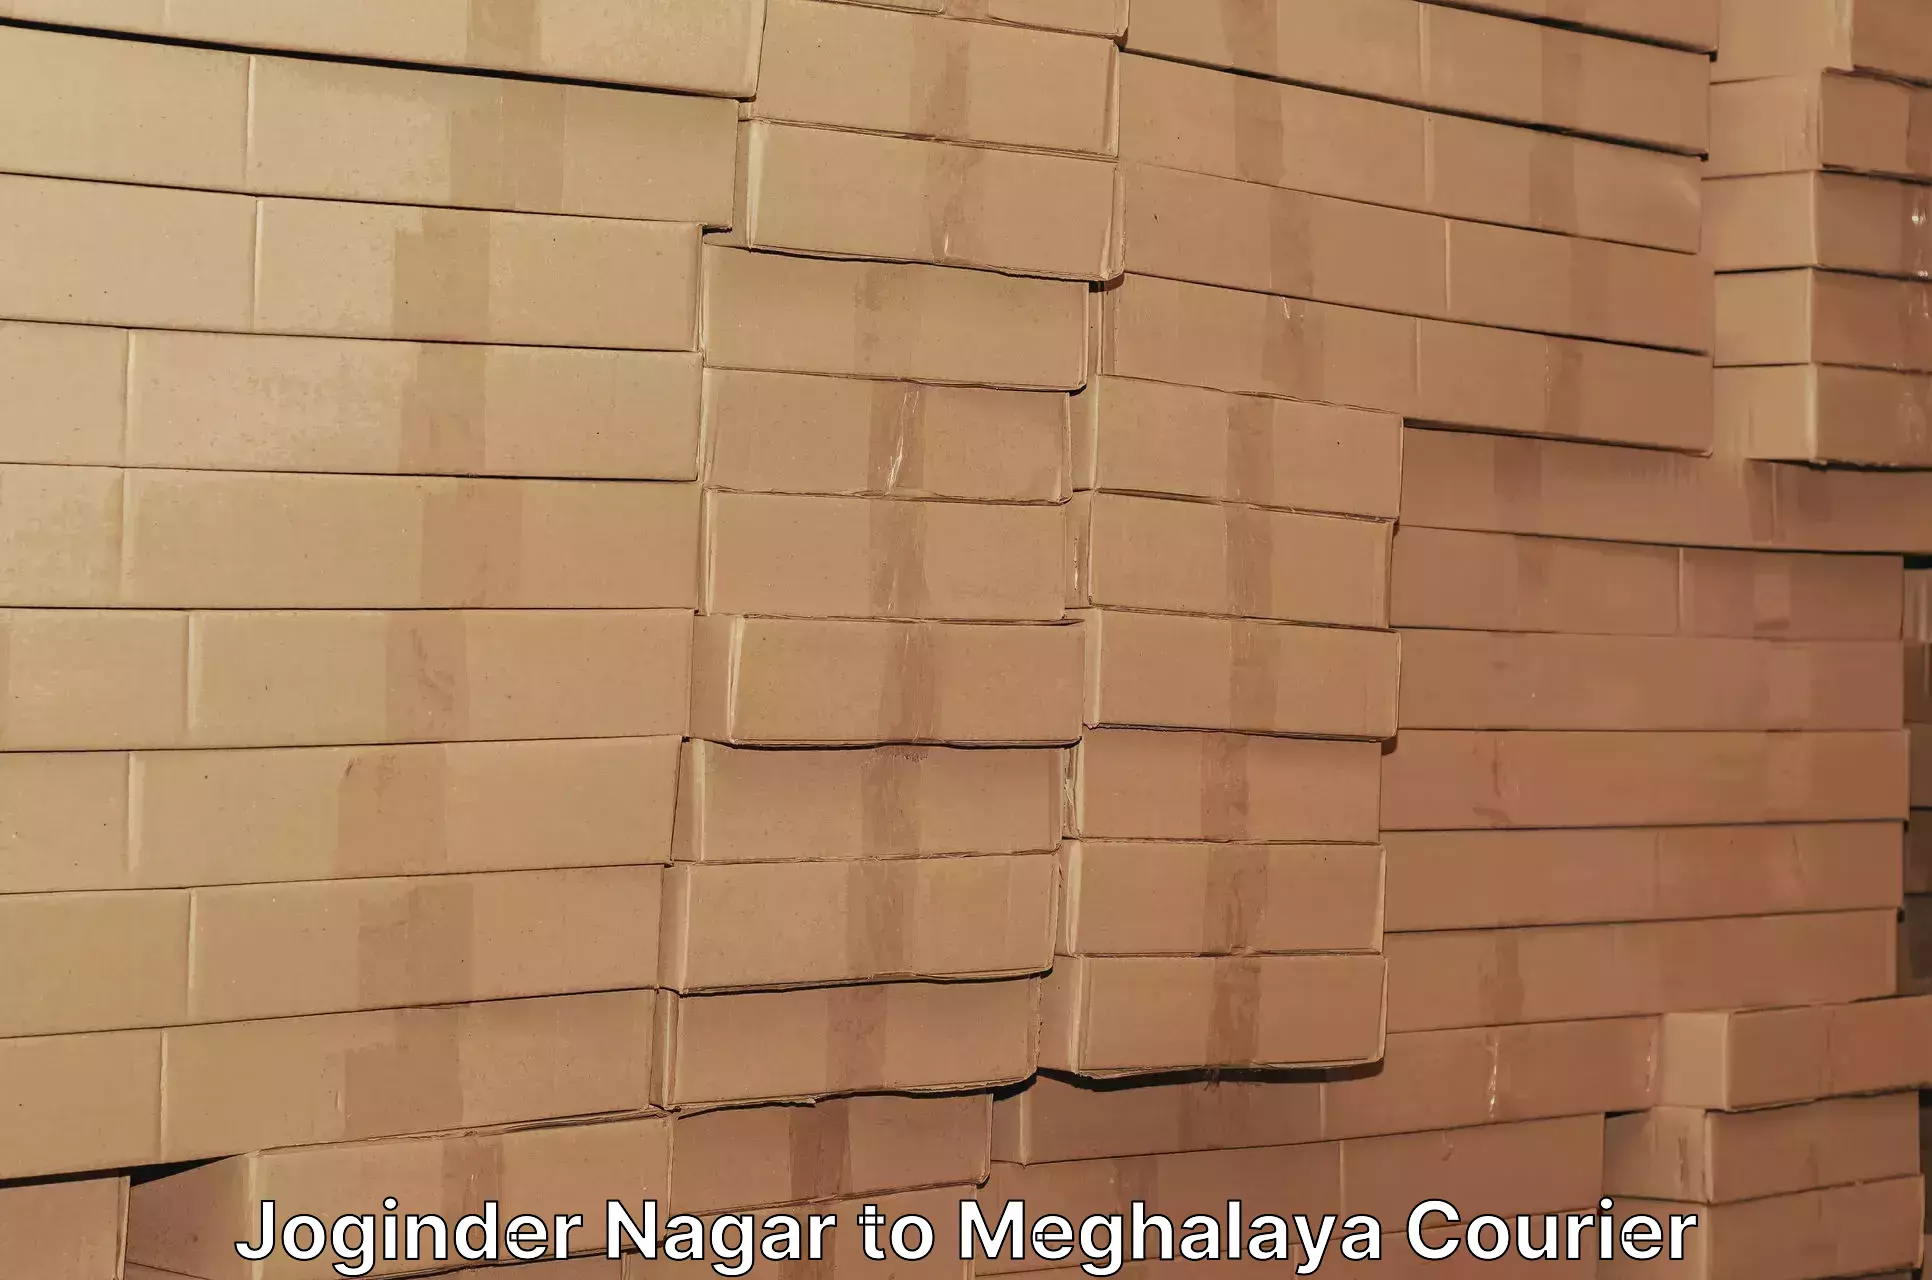 Full-service courier options Joginder Nagar to Phulbari